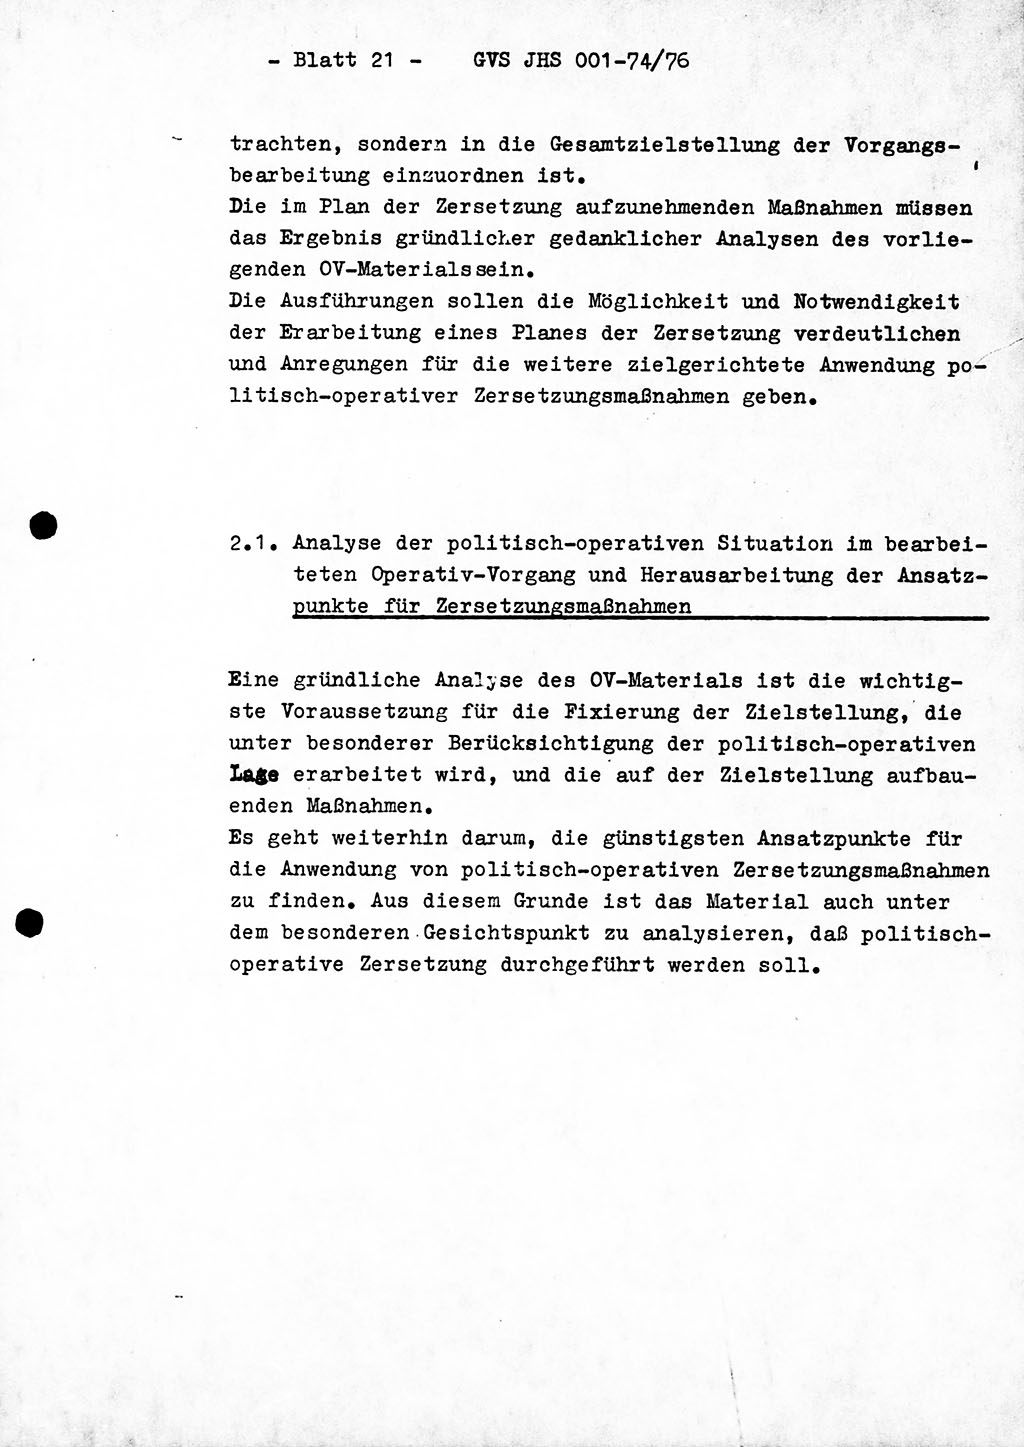 Diplomarbeit Hauptmann Joachim Tischendorf (HA ⅩⅩ), Ministerium für Staatssicherheit (MfS) der Deutschen Demokratischen Republik (DDR), Juristische Hochschule (JHS), Geheime Verschlußsache (GVS) 001-74/76, Potsdam 1976, Seite 21 (Dipl.-Arb. MfS DDR JHS GVS 001-74/76 1976, S. 21)